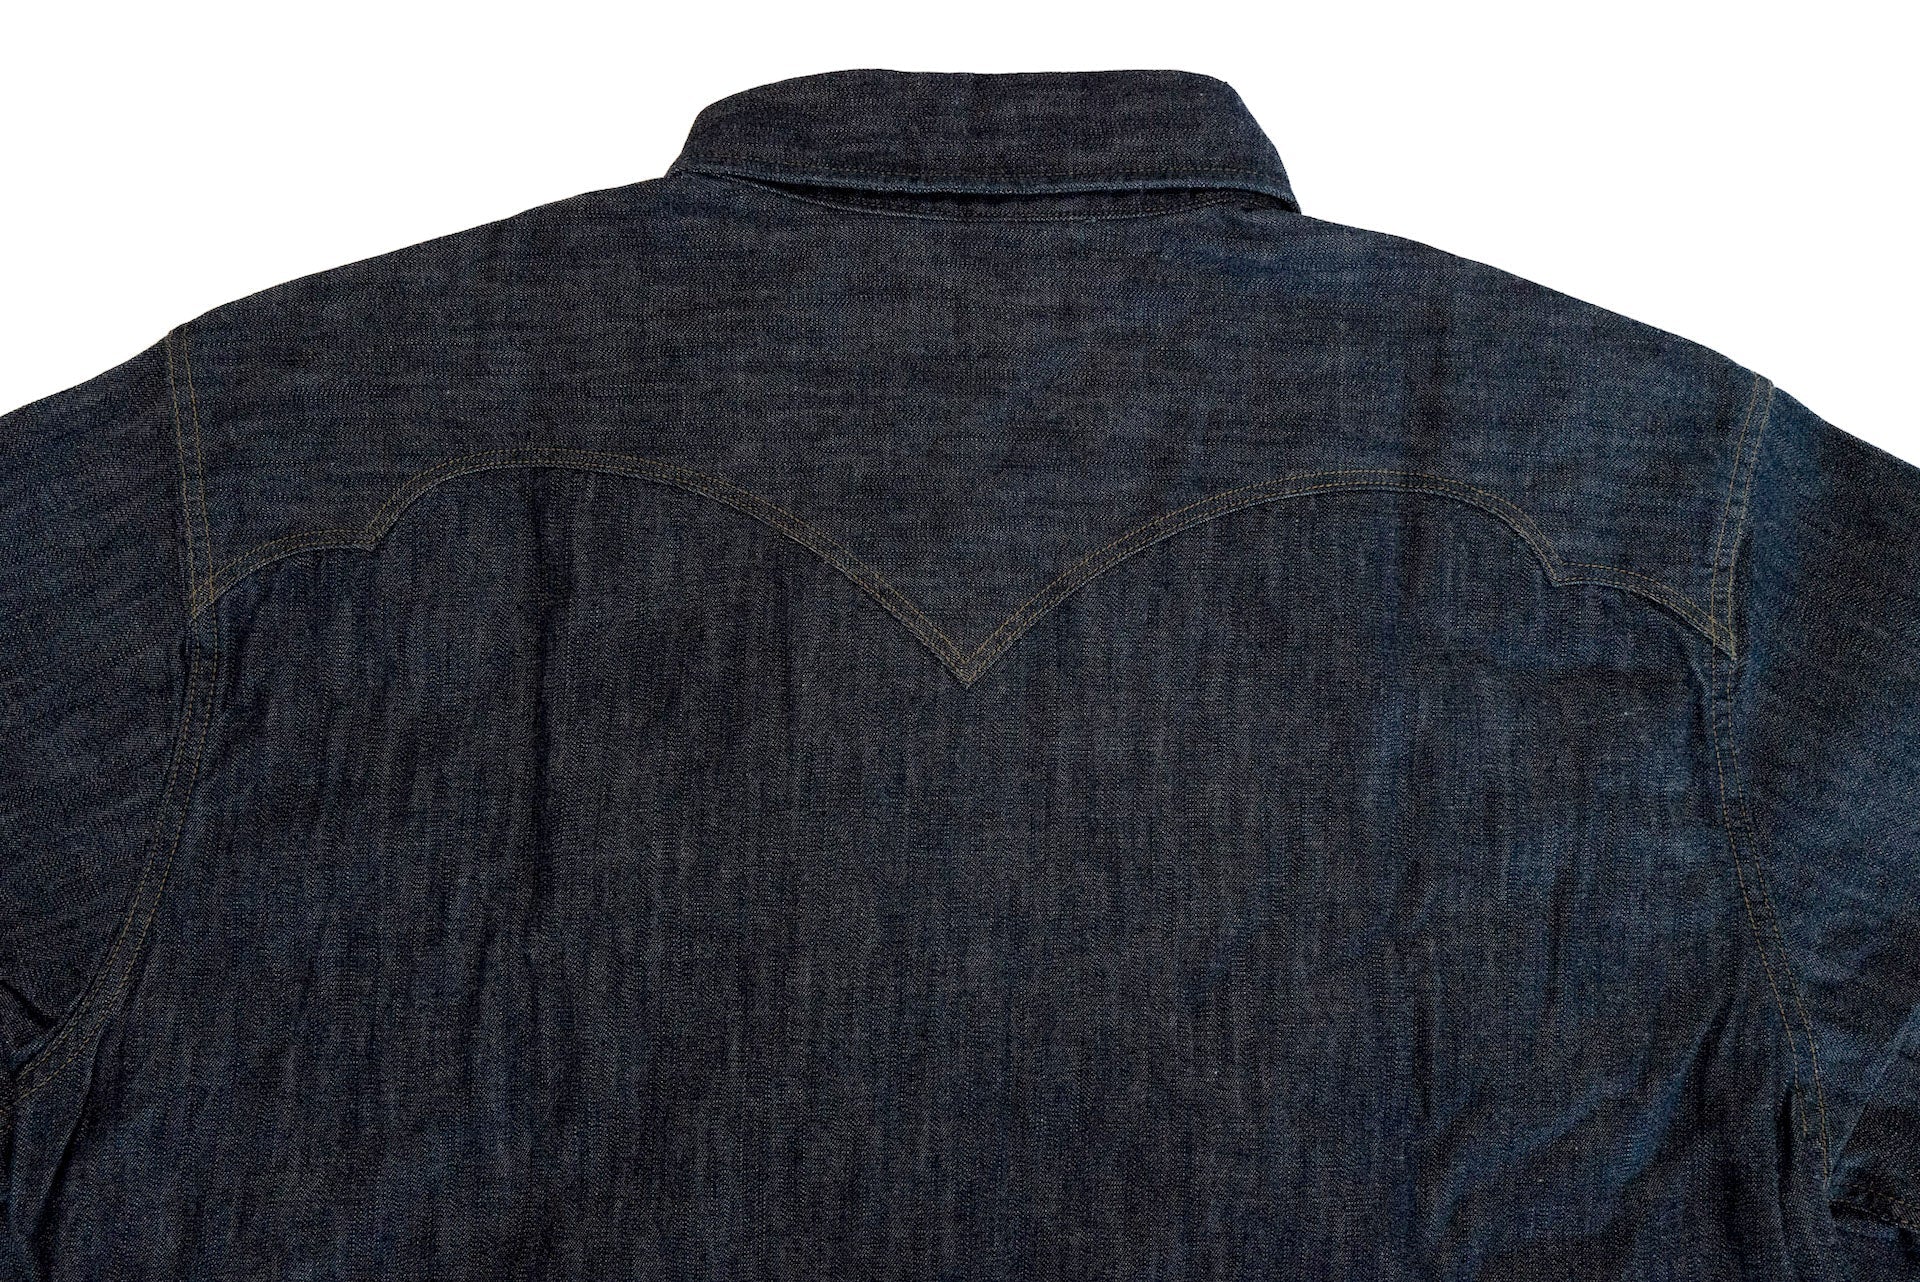 D5701 OW Natural Indigo Denim Western Shirt — Brooklyn Clothing